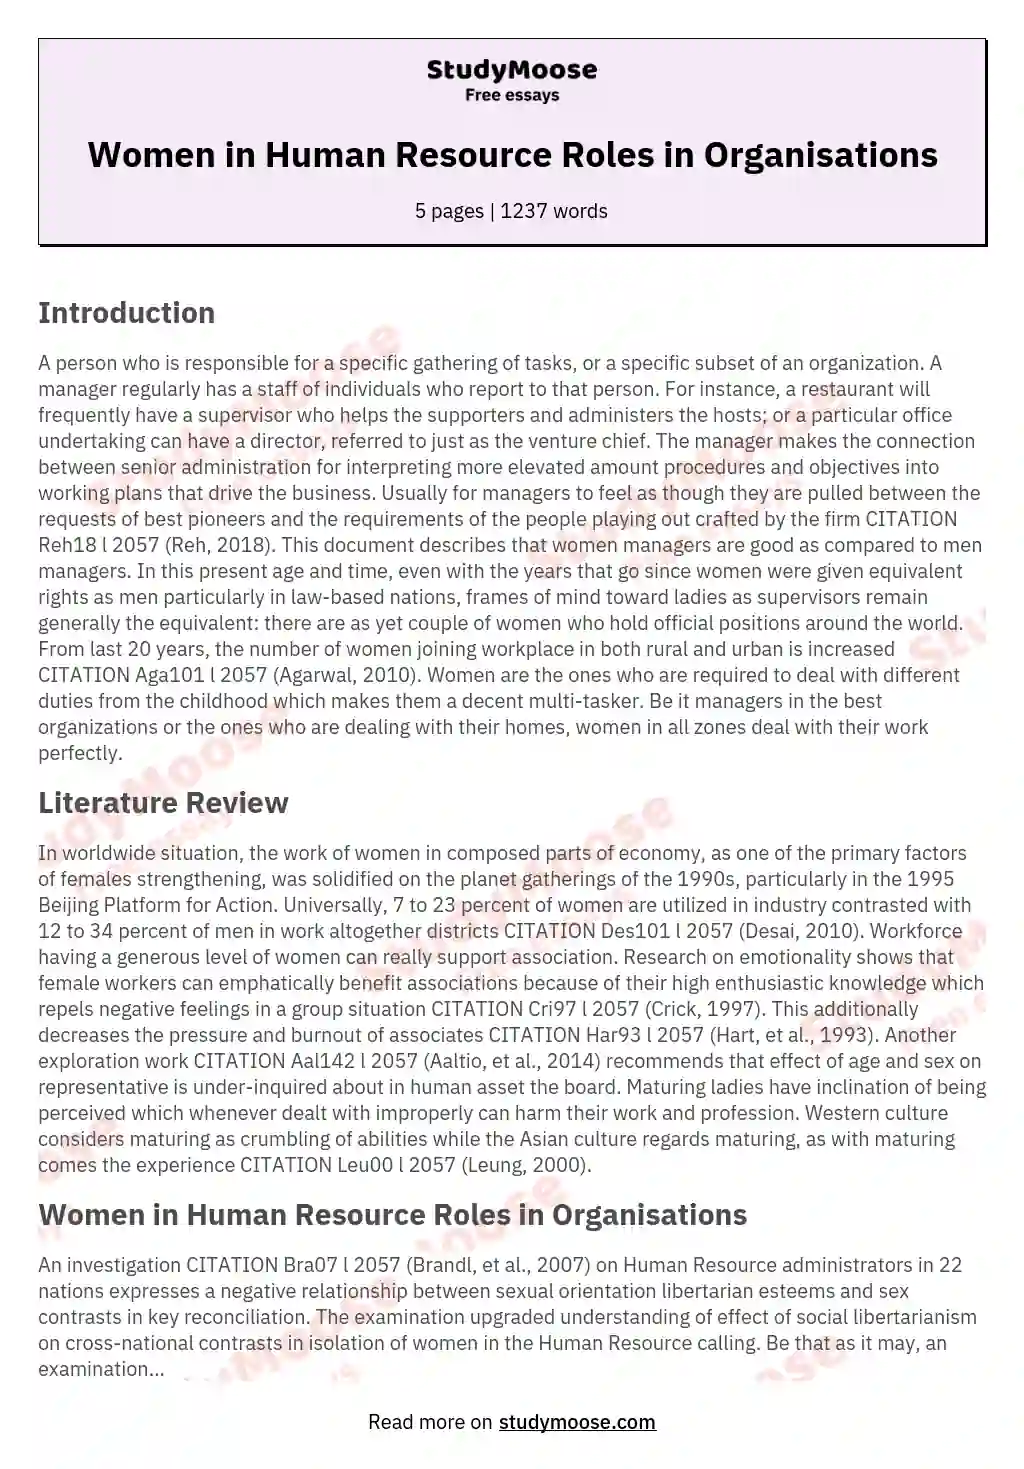 Women in Human Resource Roles in Organisations essay